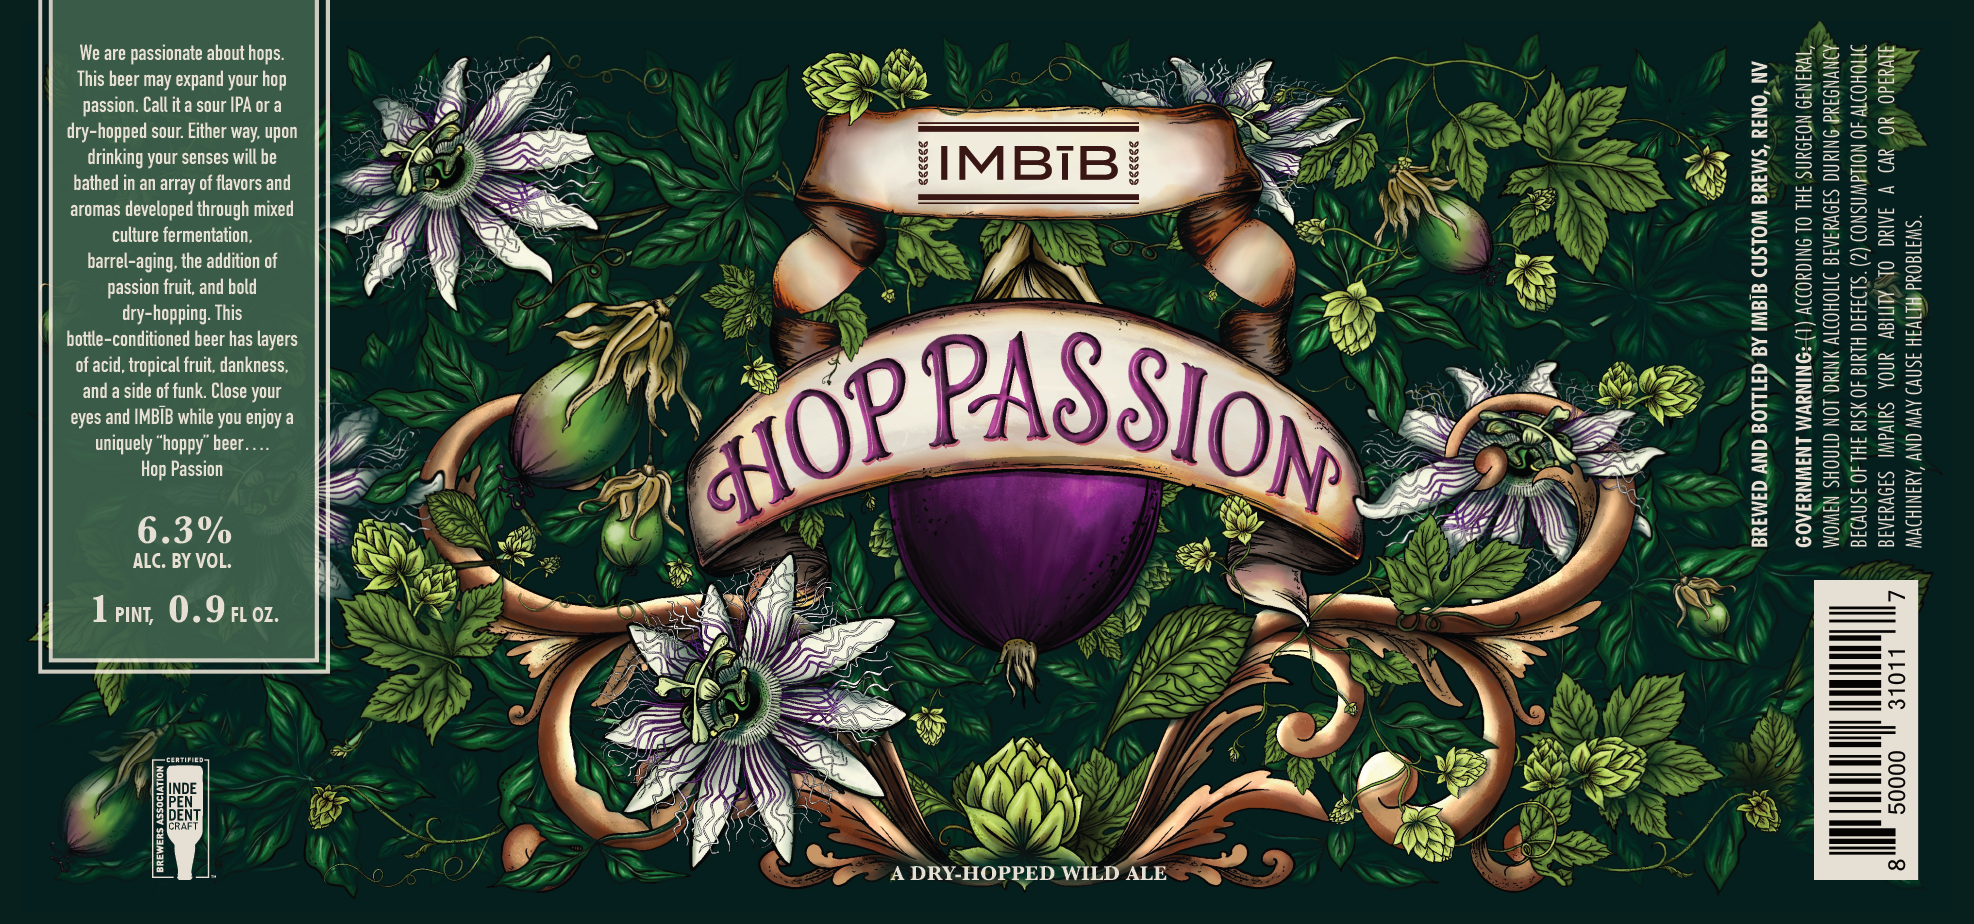 beer label design, handcrafted, illustration, botanical, design, packaging